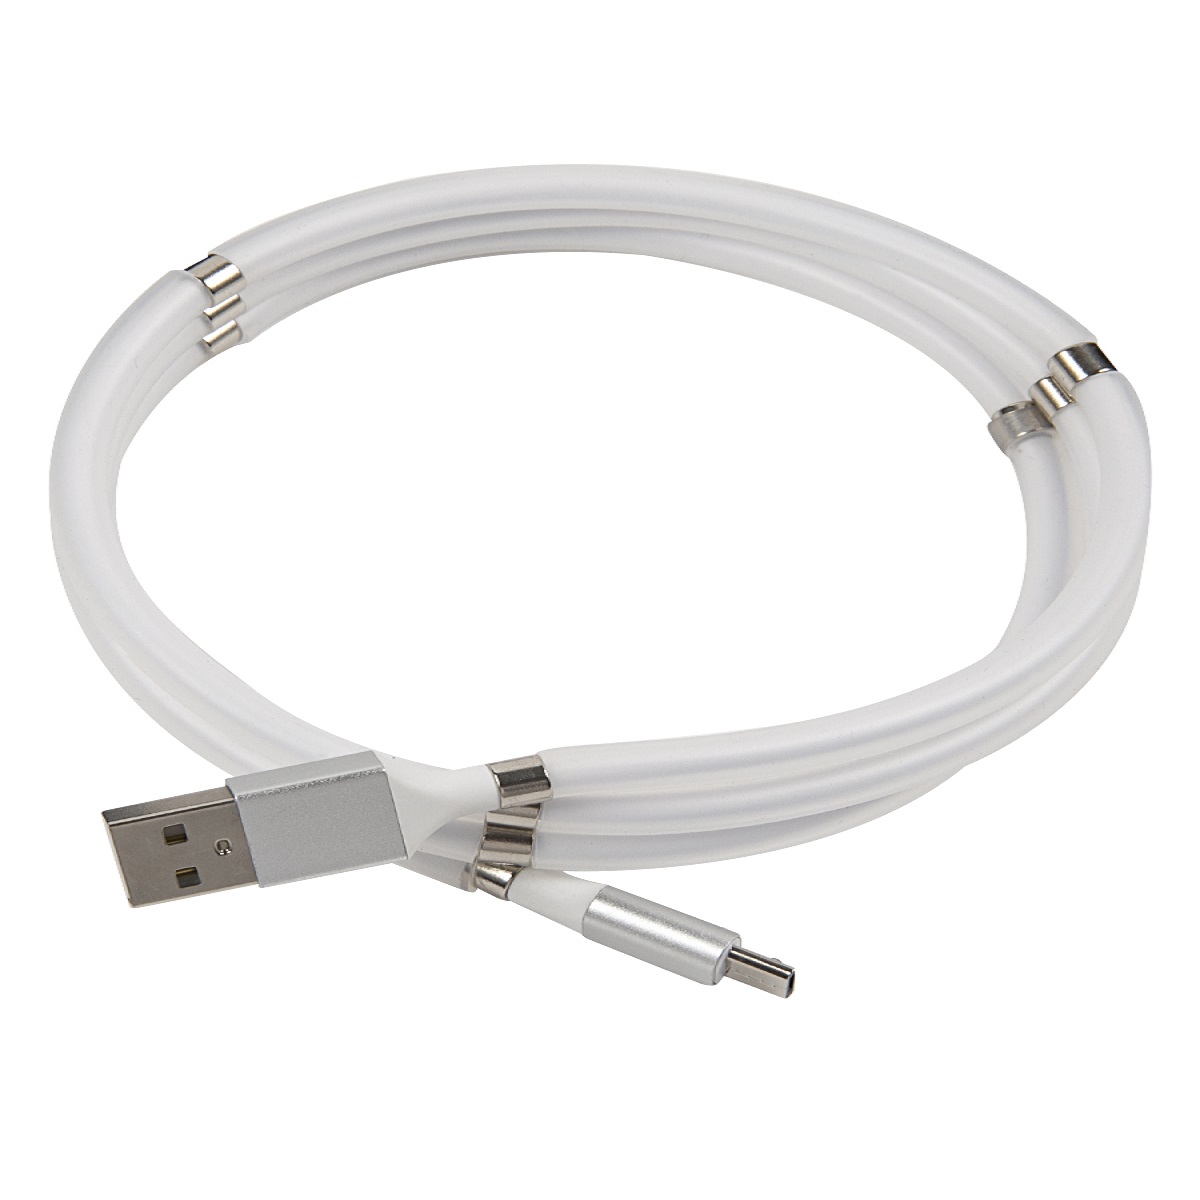 Дата-кабель mObility USB - micro USB белый скручивание на магнитах - фото 1